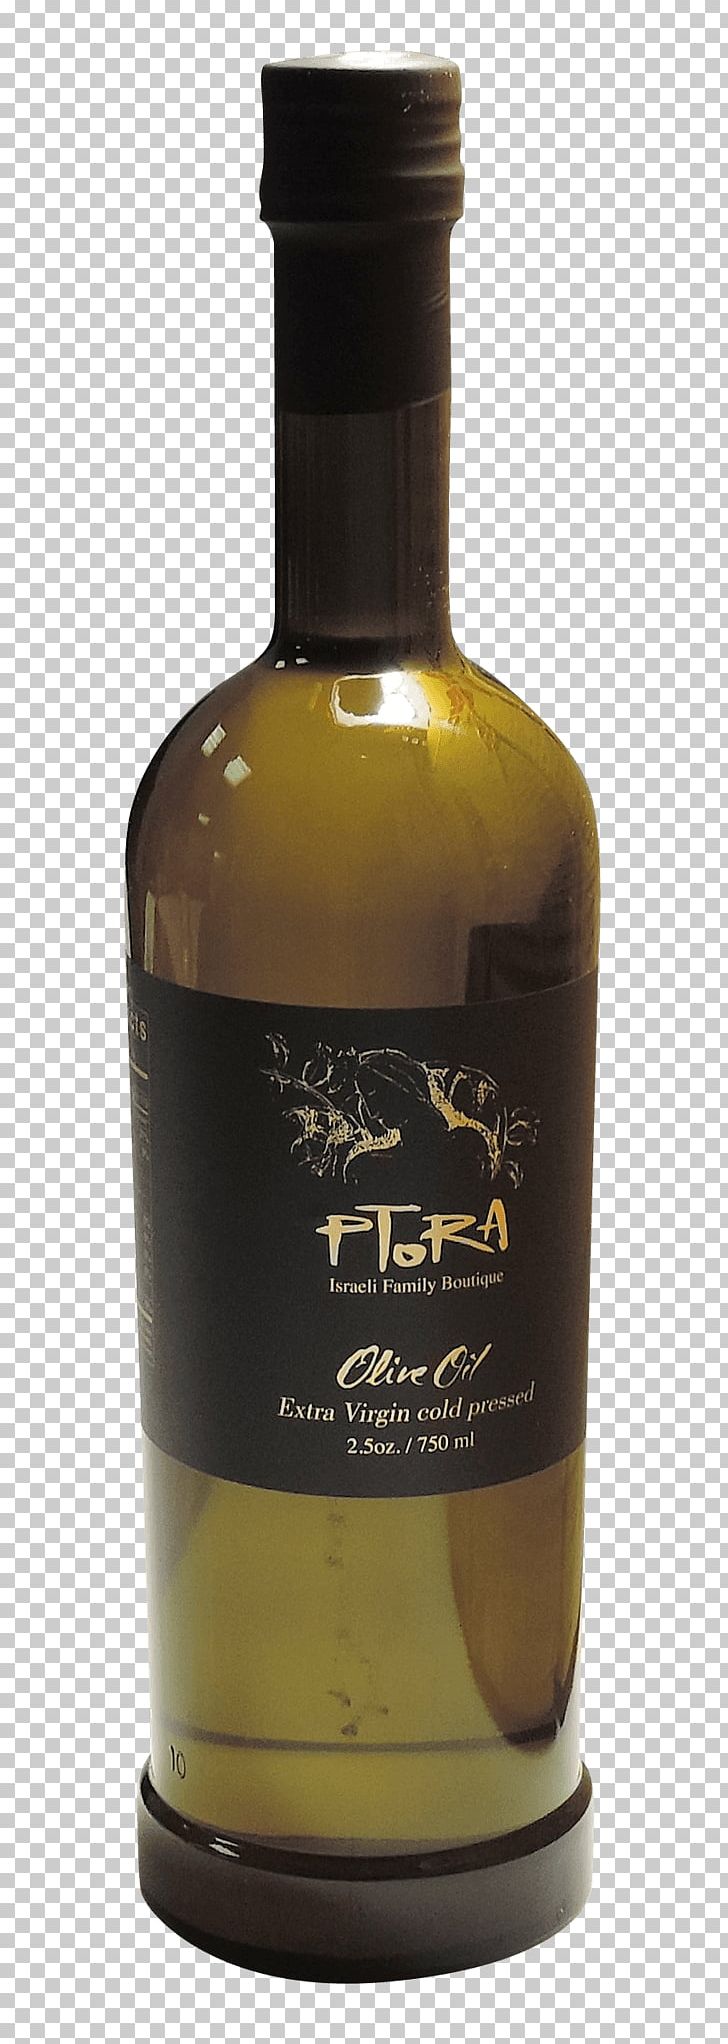 Liqueur Whiskey Glass Bottle Ptora Olive Oil Ptora First Press Olive Oil PNG, Clipart, Bottle, Distilled Beverage, Glass, Glass Bottle, Liqueur Free PNG Download